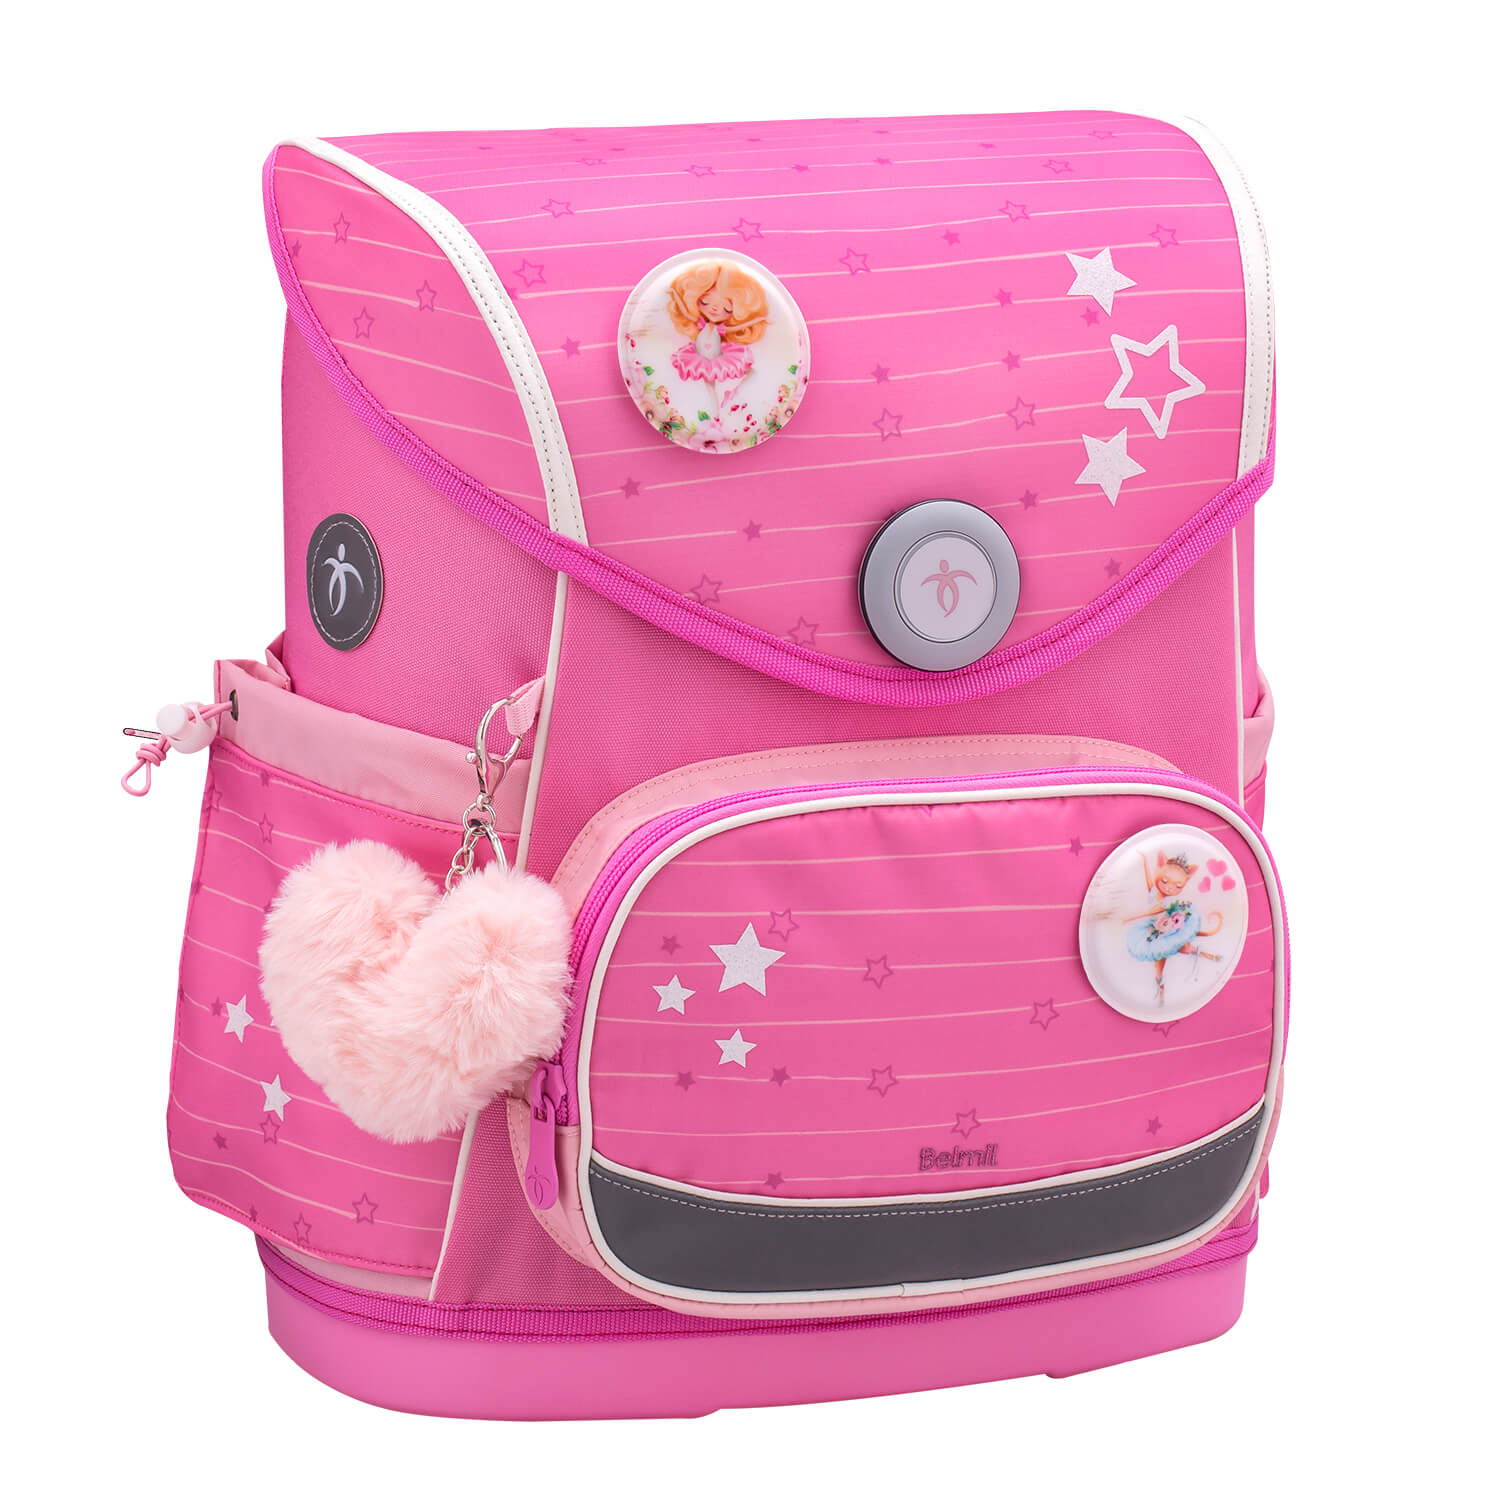 Premium Compact Plus Candy Schoolbag set 5pcs.